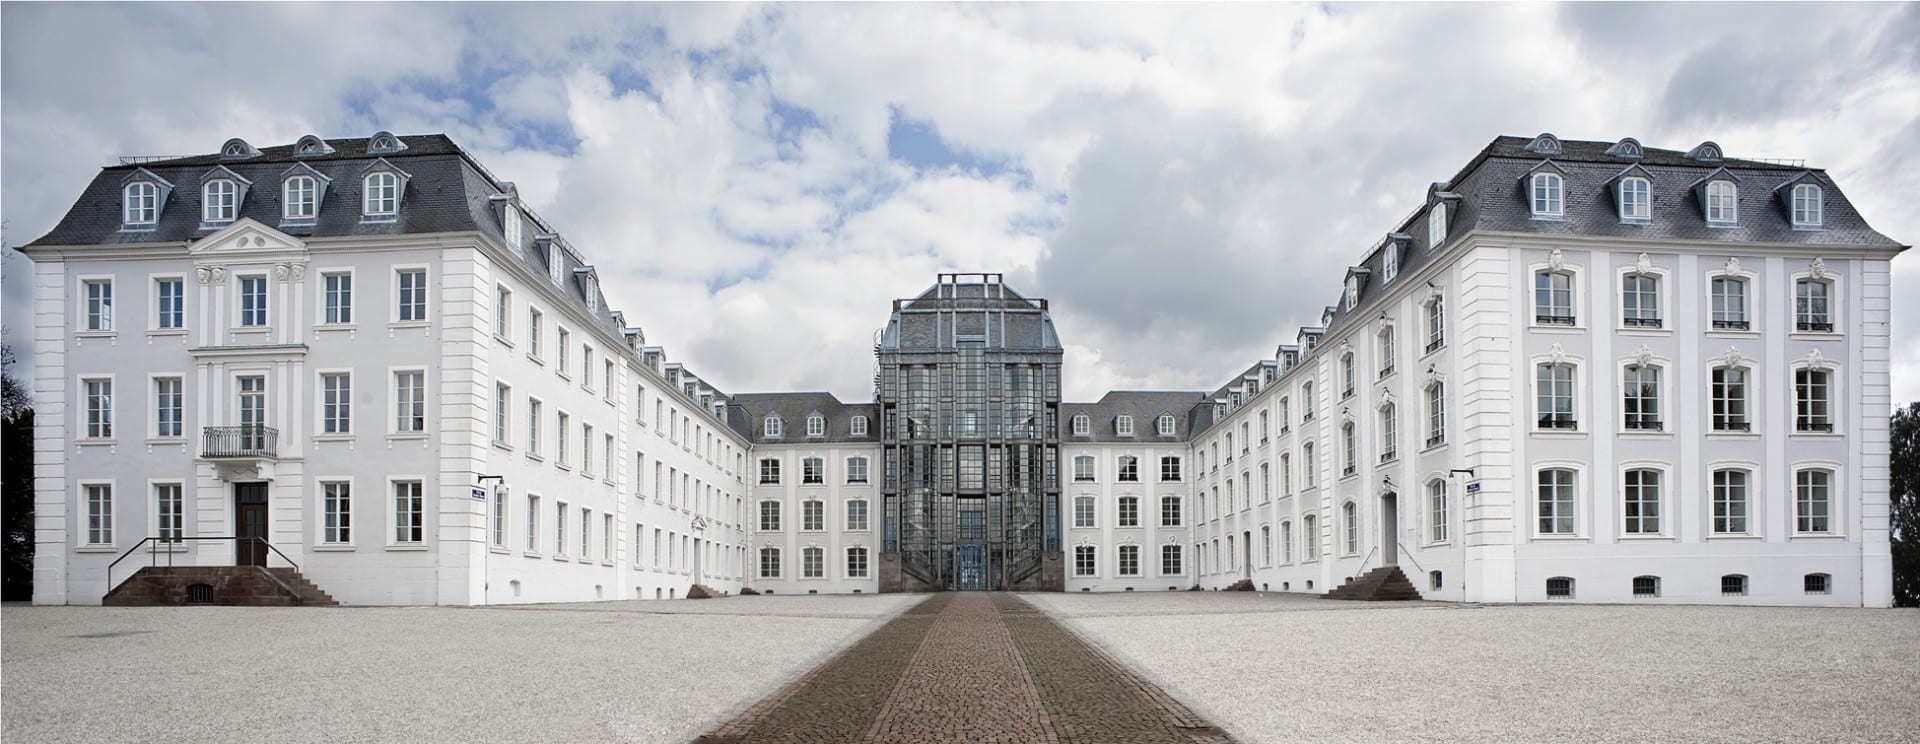 El castillo de Saarbrücken Sarrebruck Alemania